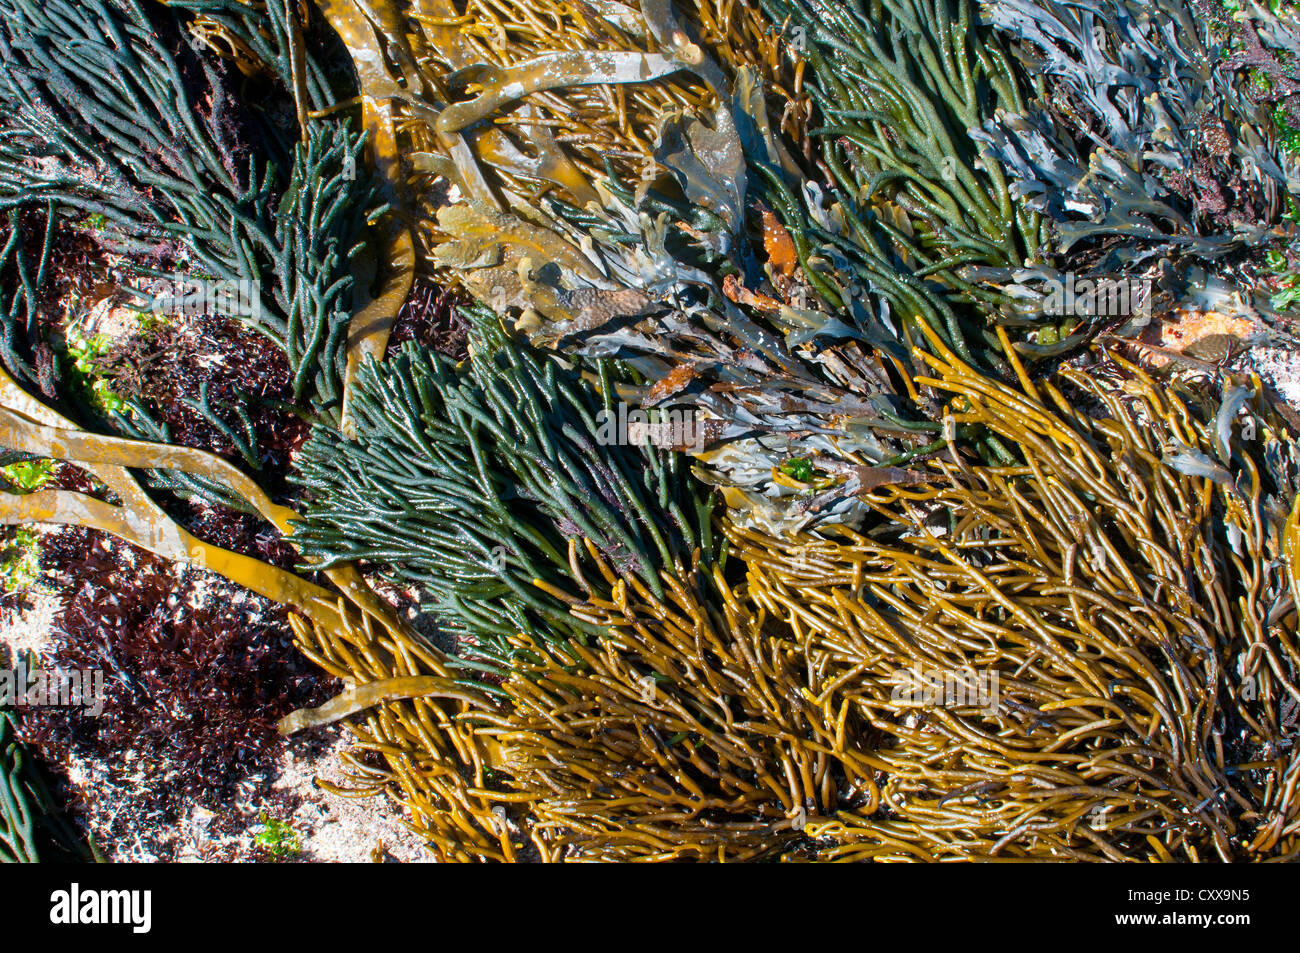 Comunidad dramática de amarillo, verde, rojo y marrón de algas en un ión de rock de la costa atlántica de Galicia, España. Foto de stock